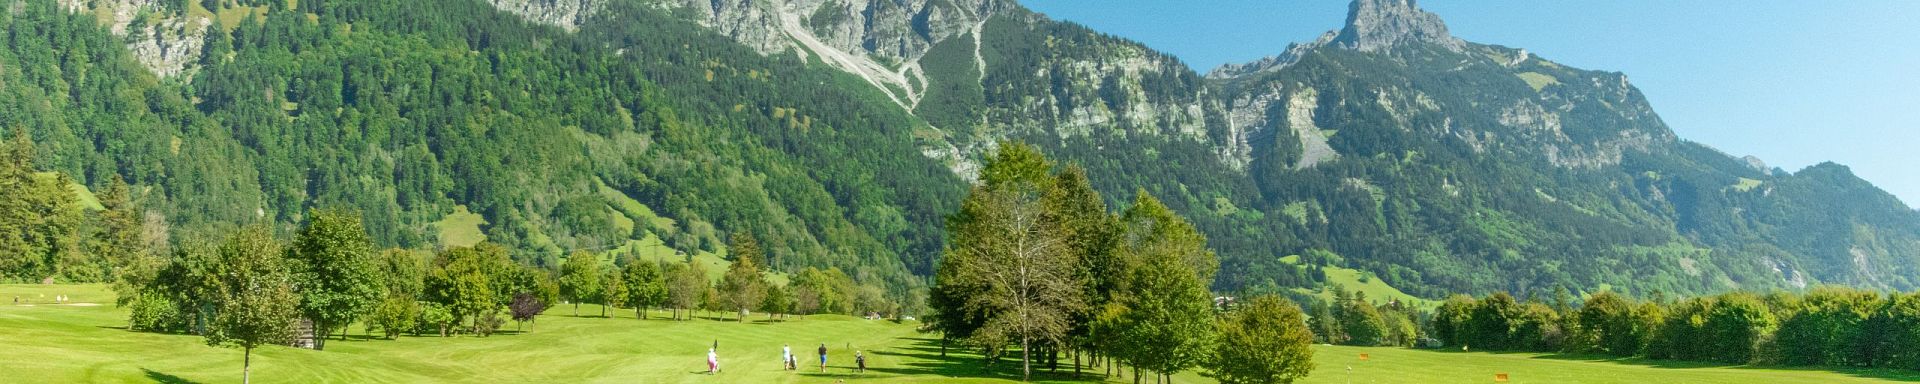 klostertal-sommer-golfclub-bludenz-braz